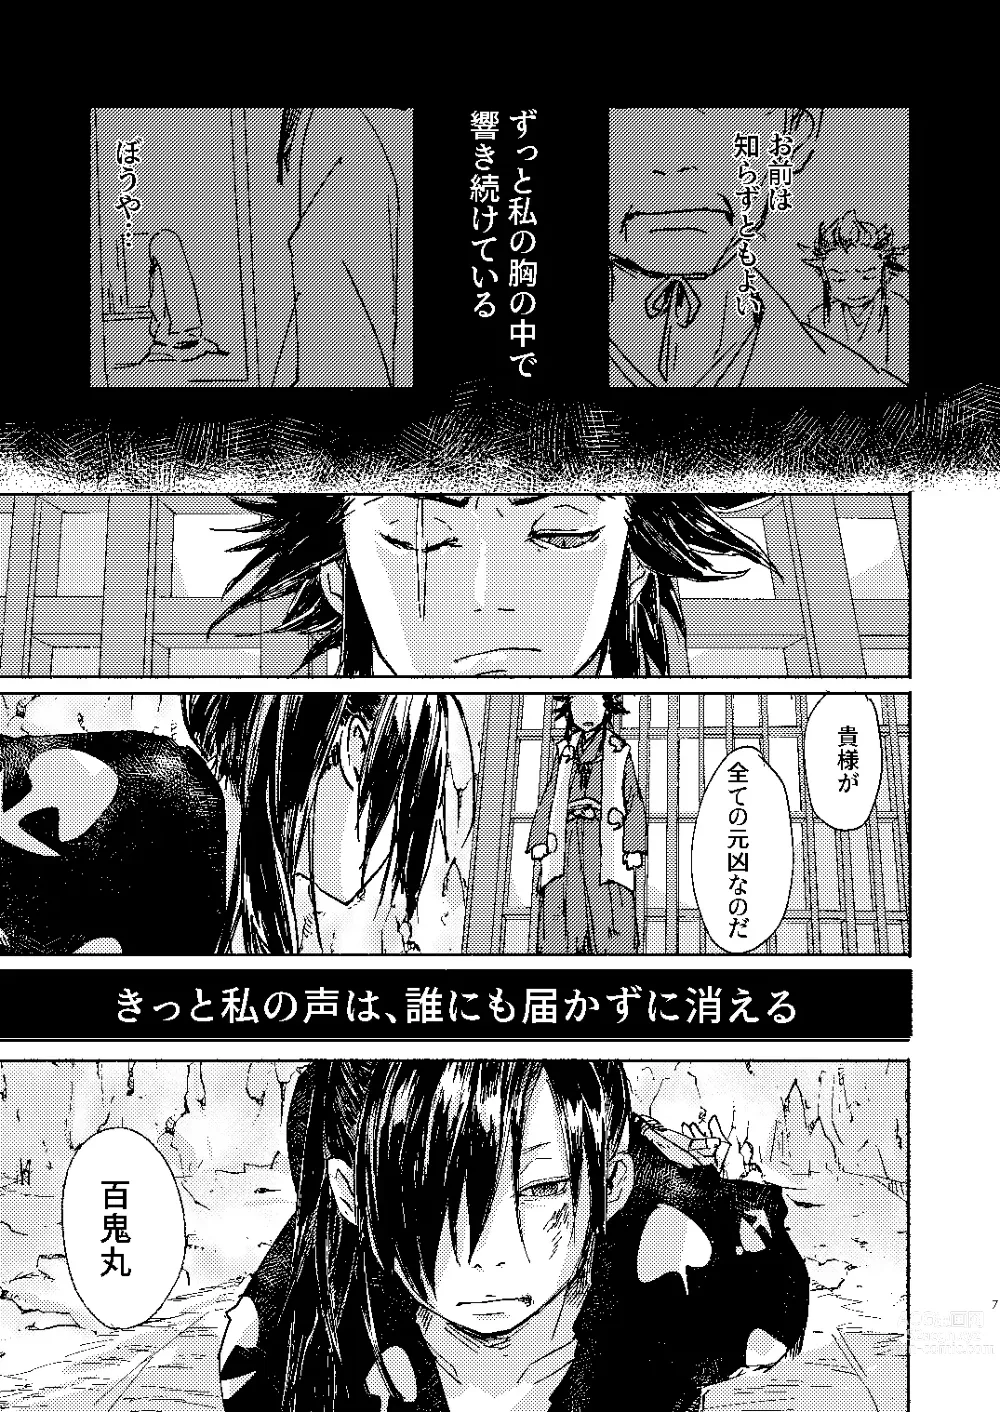 Page 7 of doujinshi Zankyou ni Miru Utsusemi no Kimi